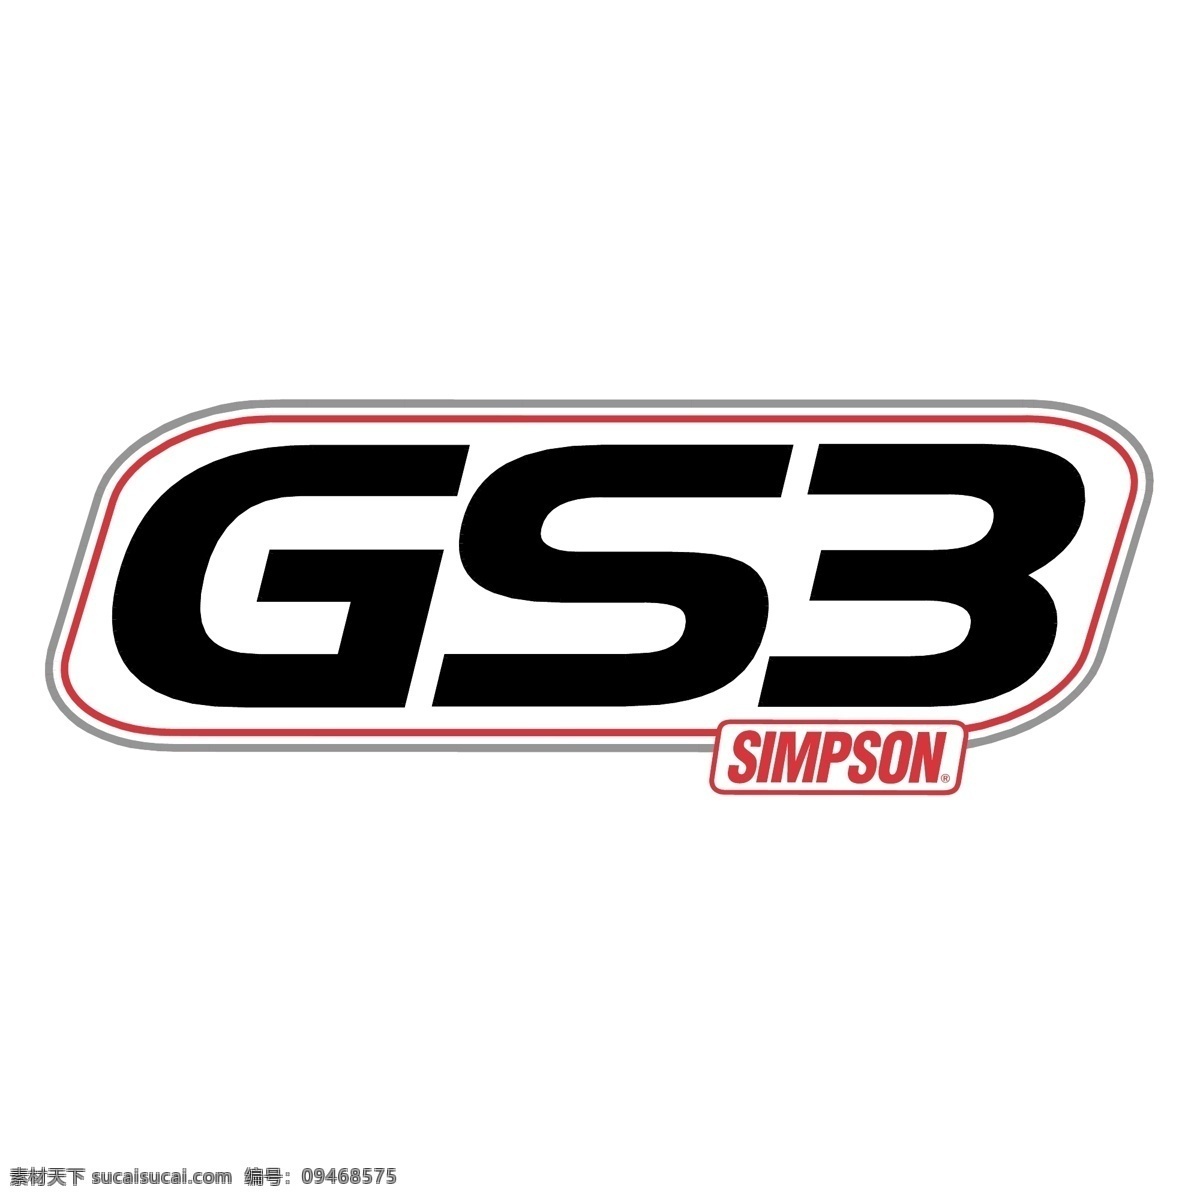 辛普森 赛车 自由 标识 psd源文件 logo设计